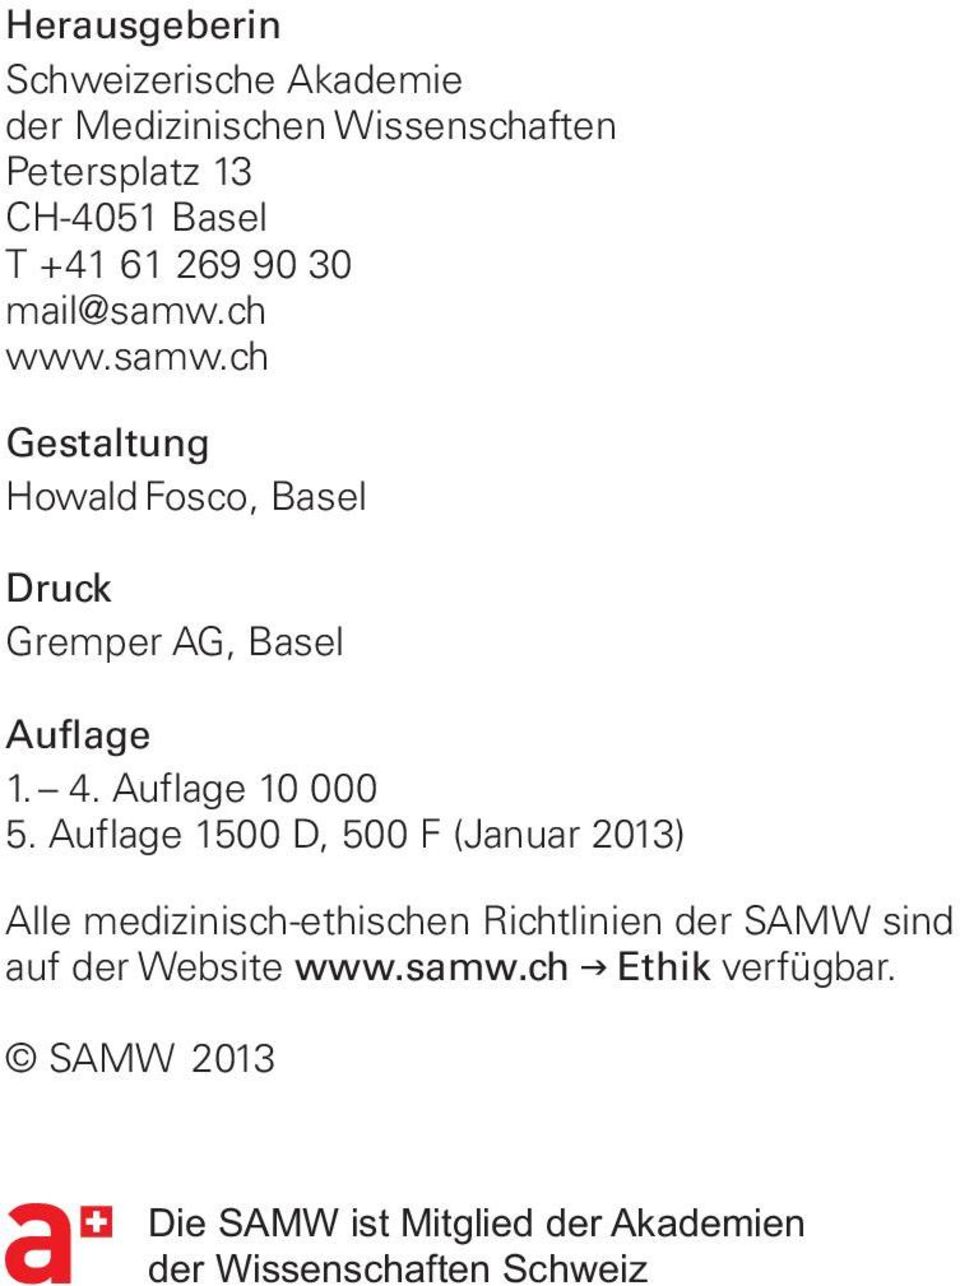 Auflage 1500 D, 500 F (Januar 2013) Alle medizinisch-ethischen Richtlinien der SAMW sind auf der Website www.samw.